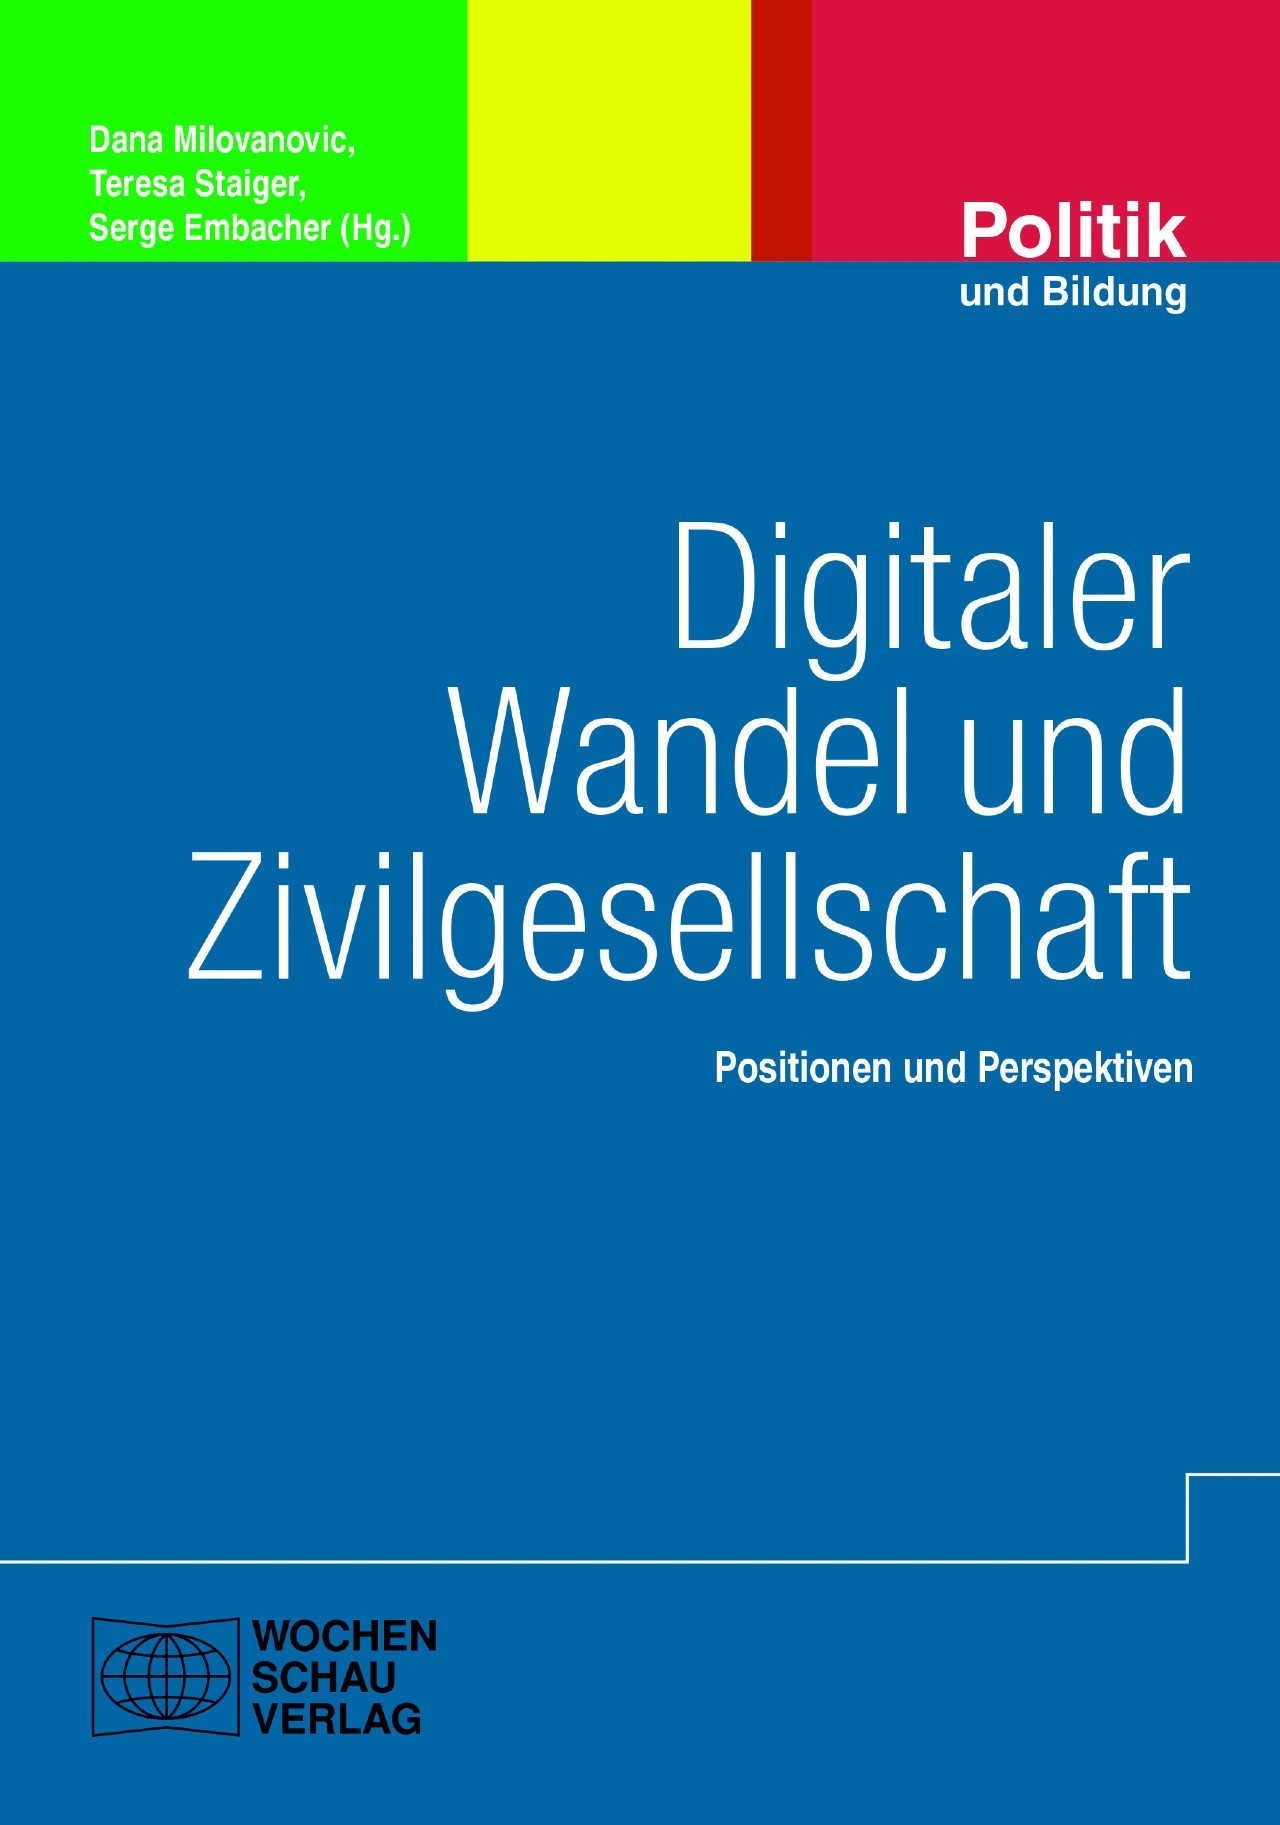 Blaues Buchcover mit der Aufschrift "Digitaler Wandel und Zivilgesellschaft. Positionen und Perspektiven"